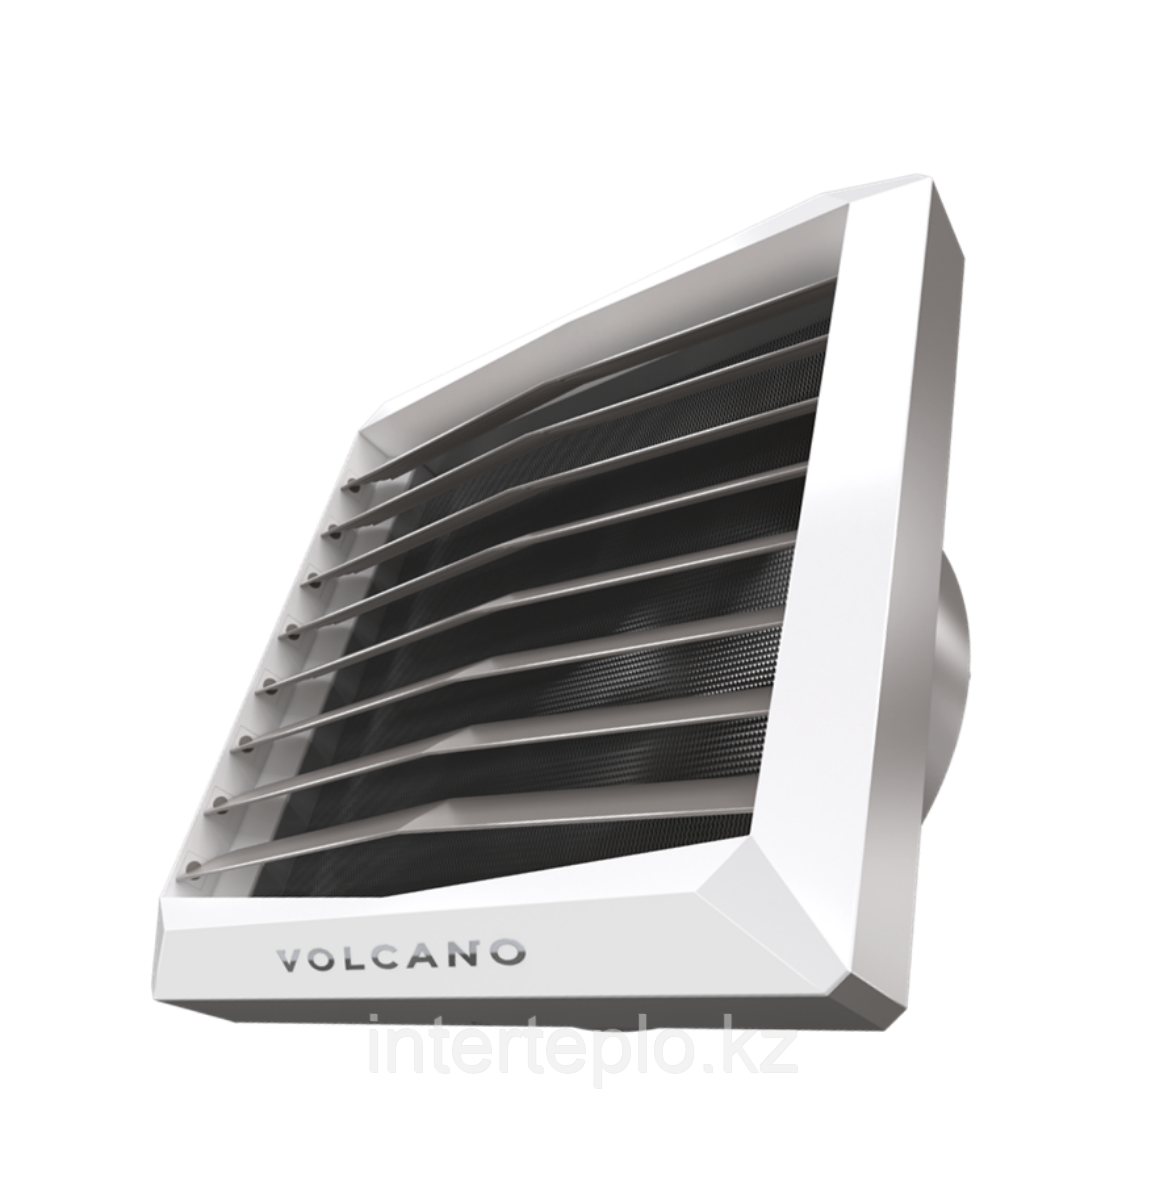 Тепловентилятор VOLCANO VR1 AC, фото 1